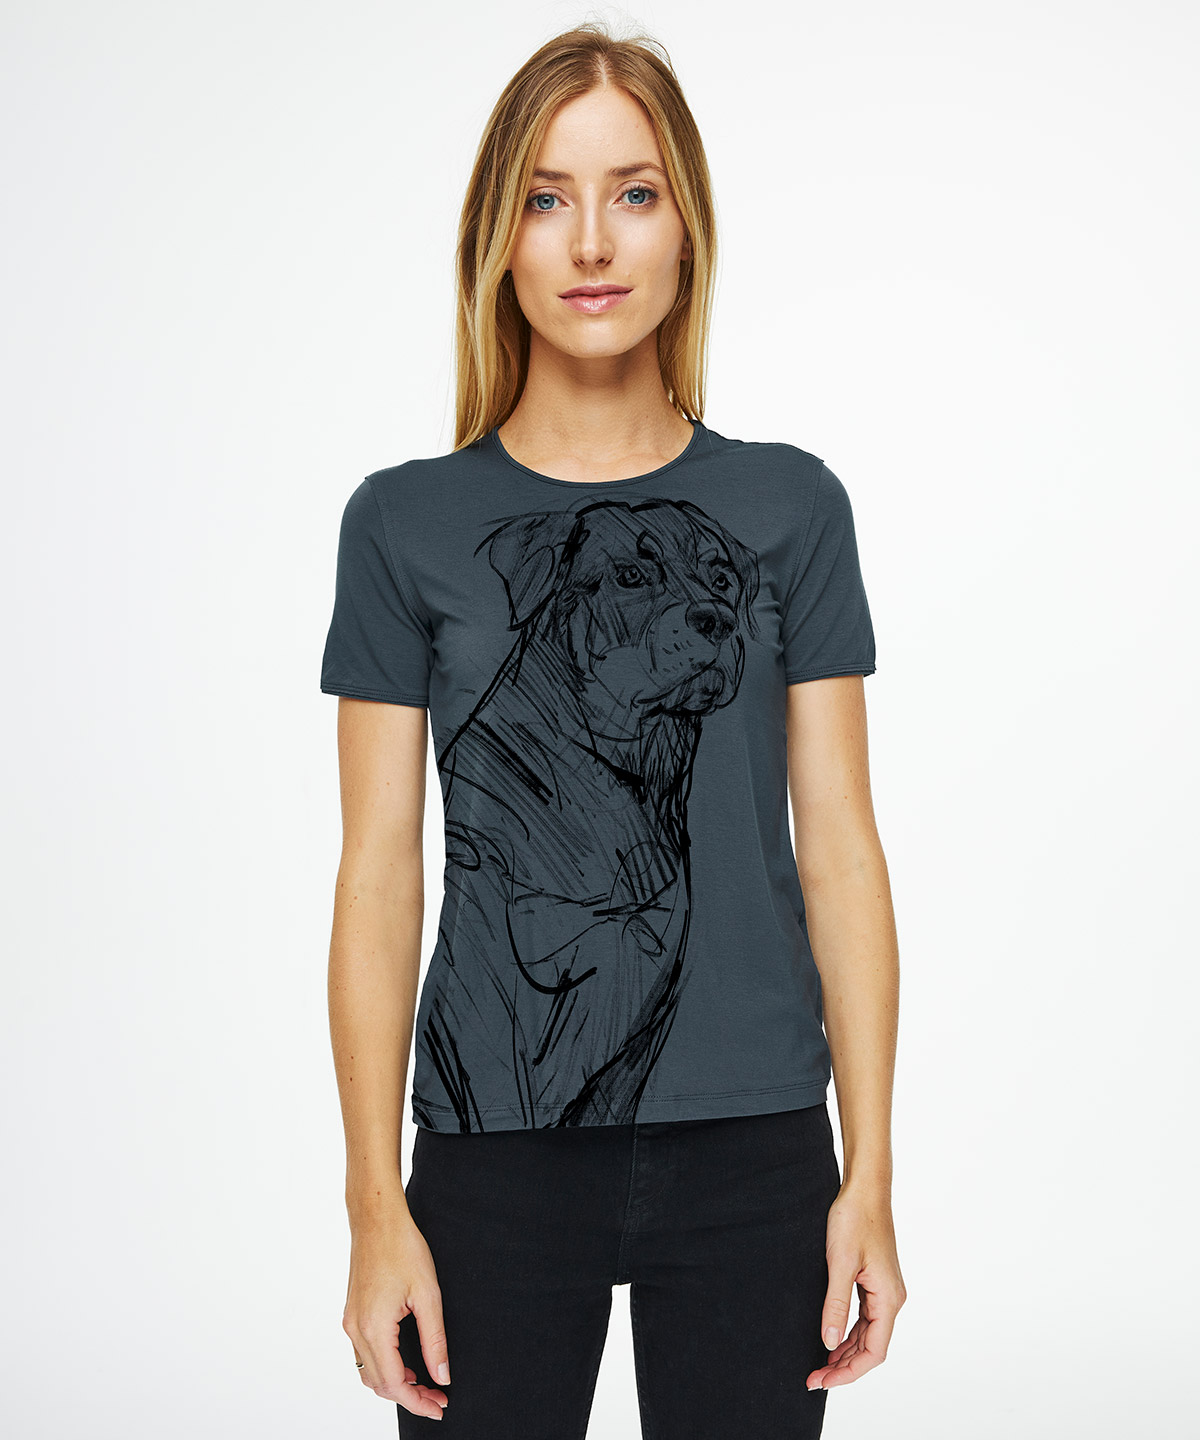 Rottweiler dark cool gray t-shirt woman